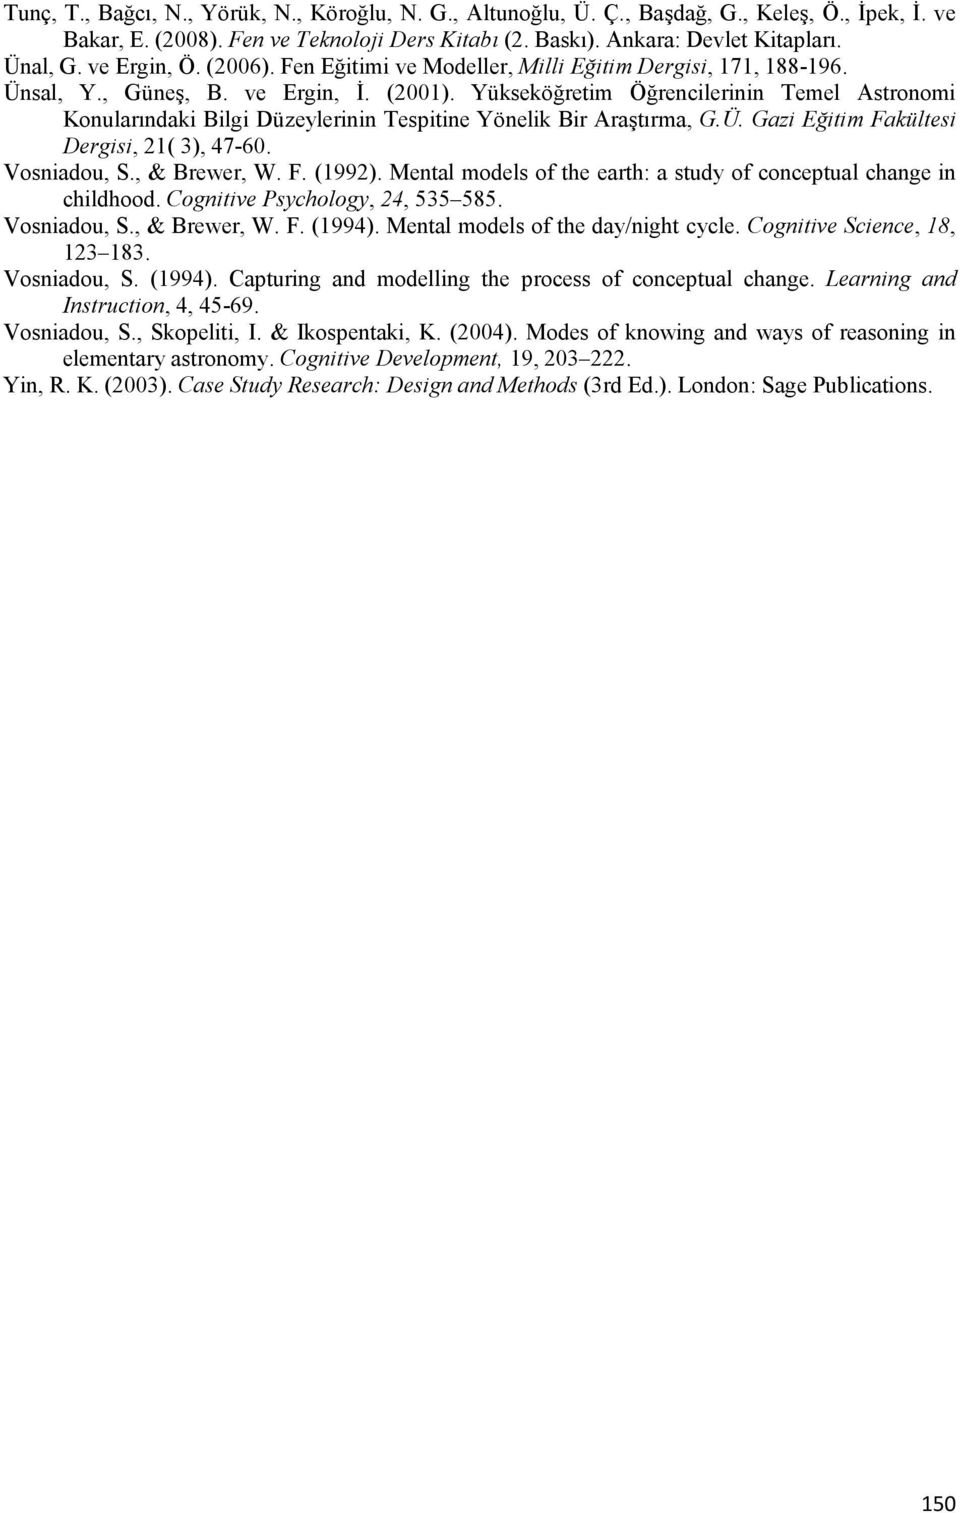 Yükseköğretim Öğrencilerinin Temel Astronomi Konularındaki Bilgi Düzeylerinin Tespitine Yönelik Bir Araştırma, G.Ü. Gazi Eğitim Fakültesi Dergisi, 21( 3), 47-60. Vosniadou, S., & Brewer, W. F. (1992).